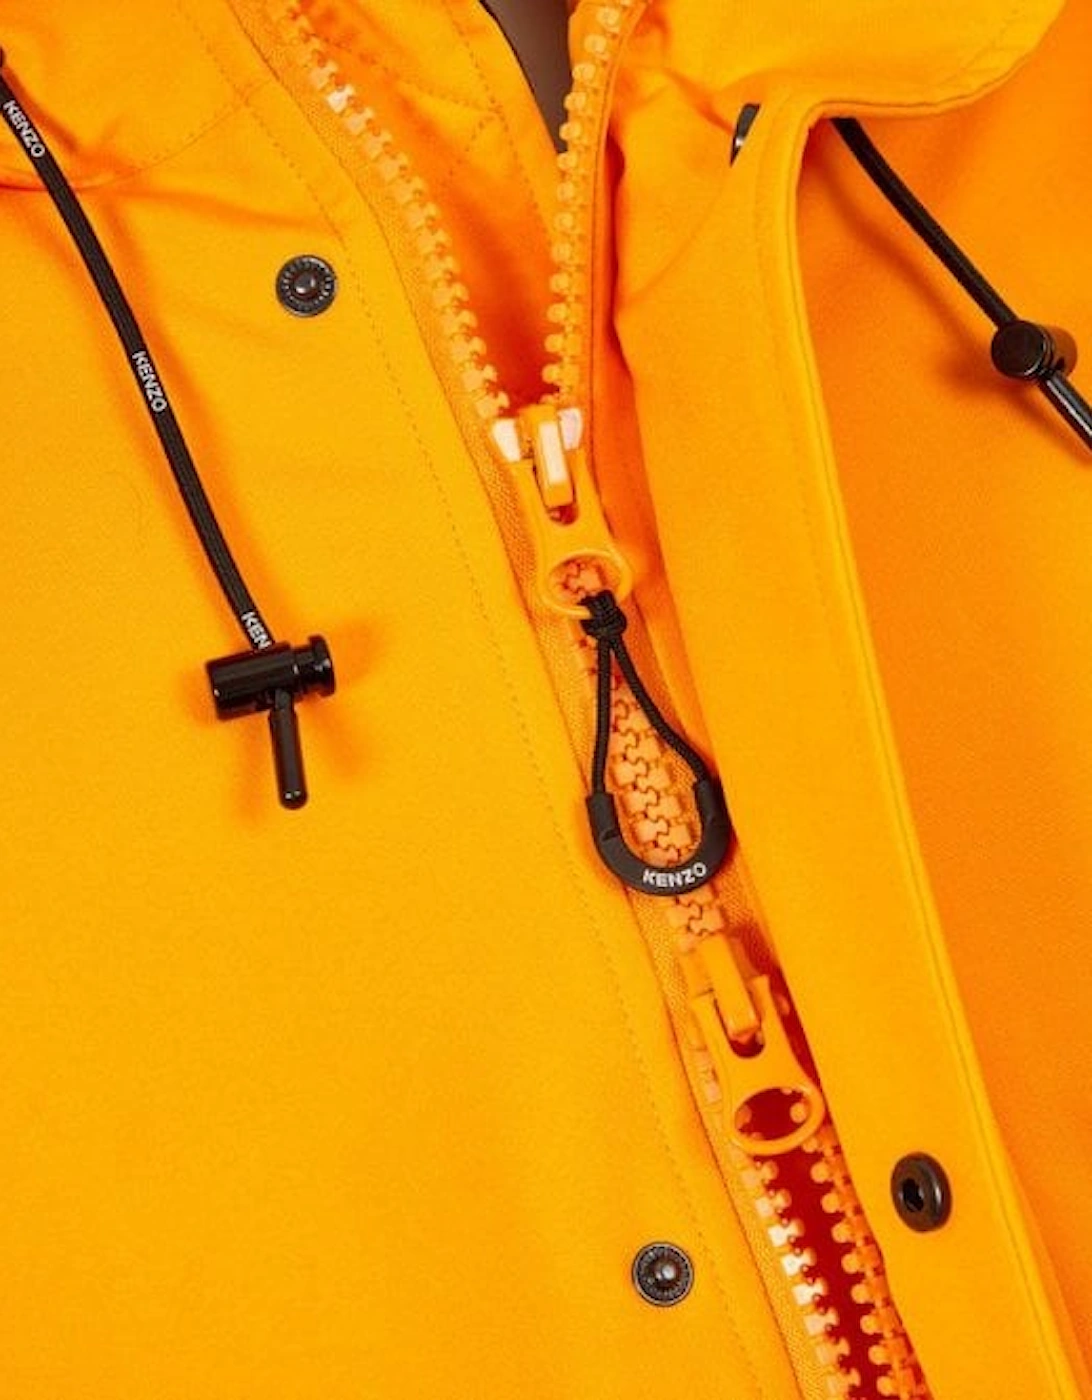 Men's Padded Fur Hooded Parka Jacket Orange